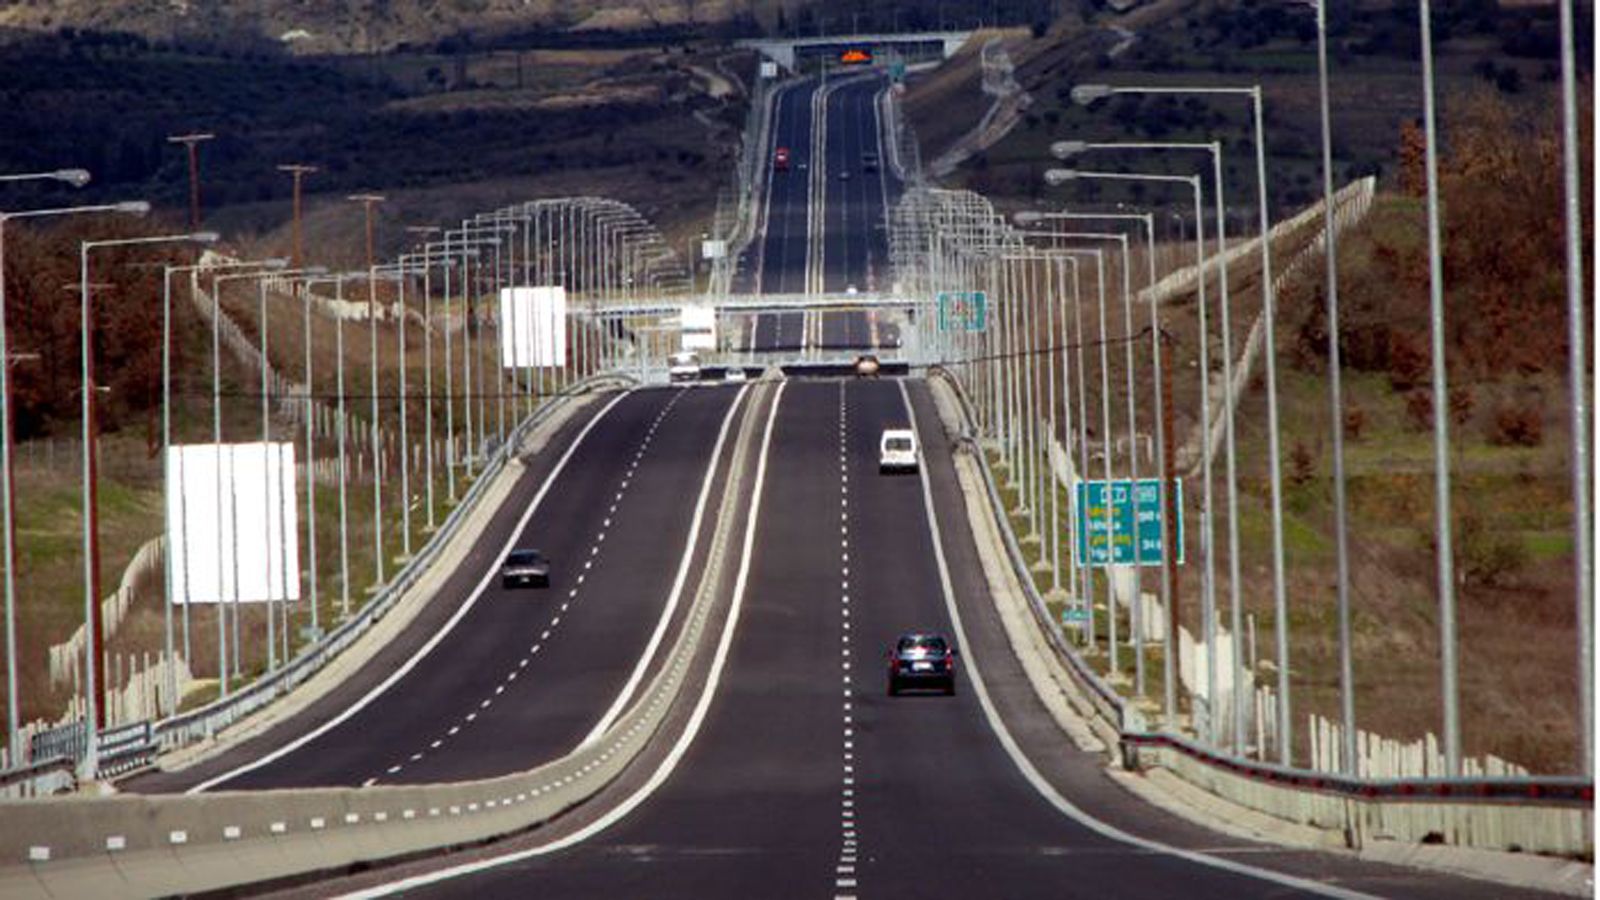 Έρχεται ο νέος αυτοκινητόδρομος που θα συνδέσει την Αθήνα με τη Μακεδονία – Πότε θα είναι έτοιμος